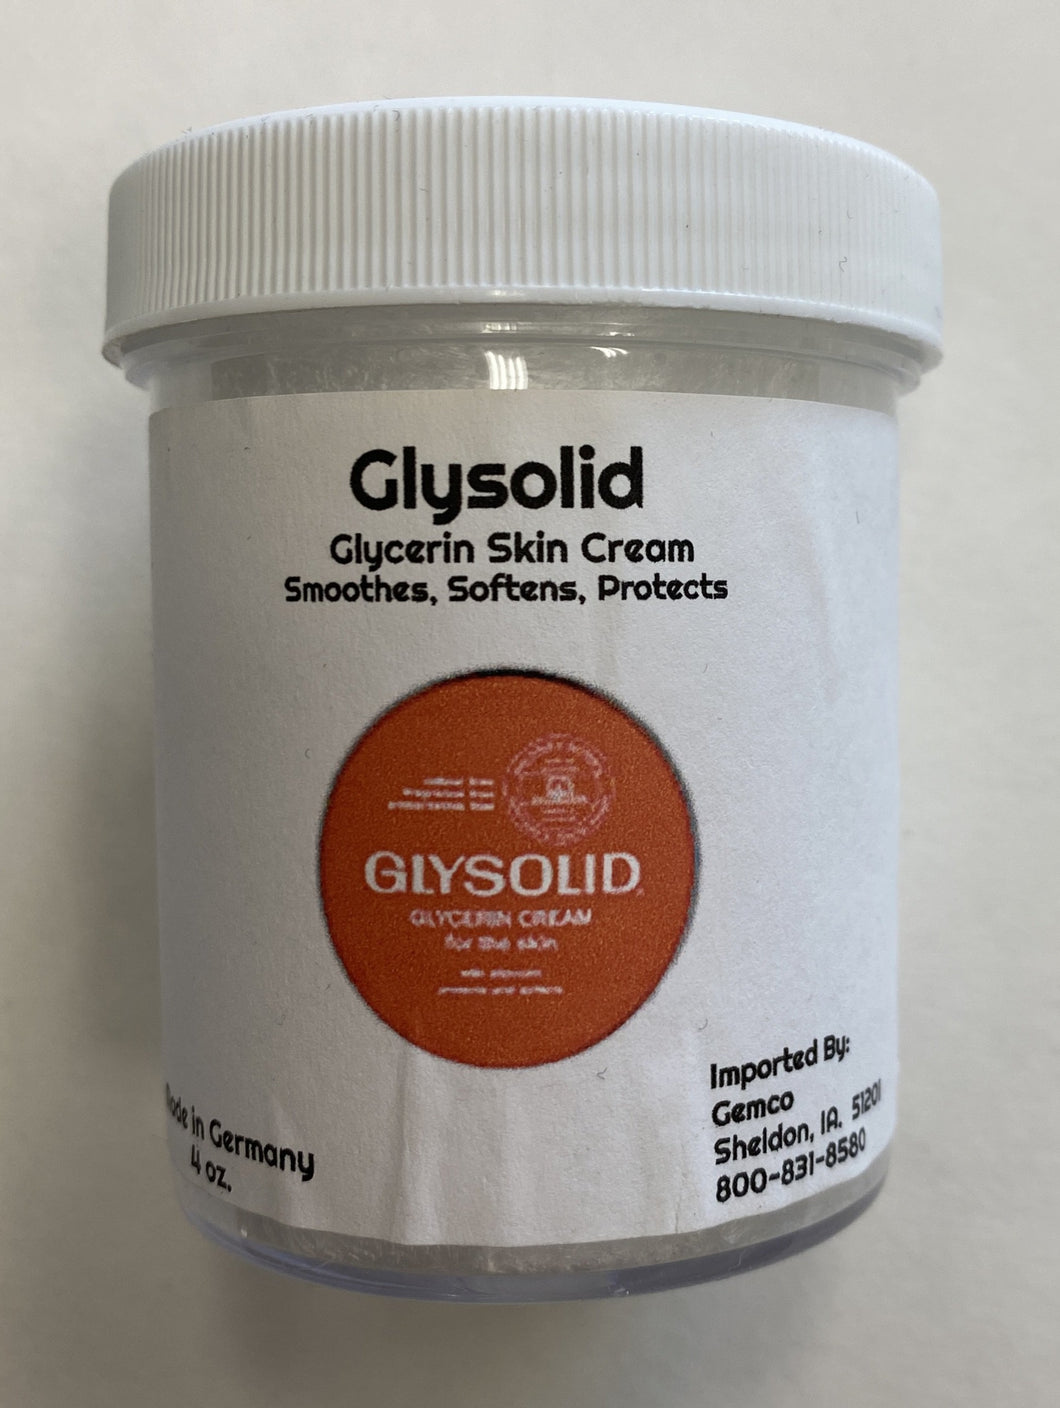 Glysolid Glycerin Skin Cream